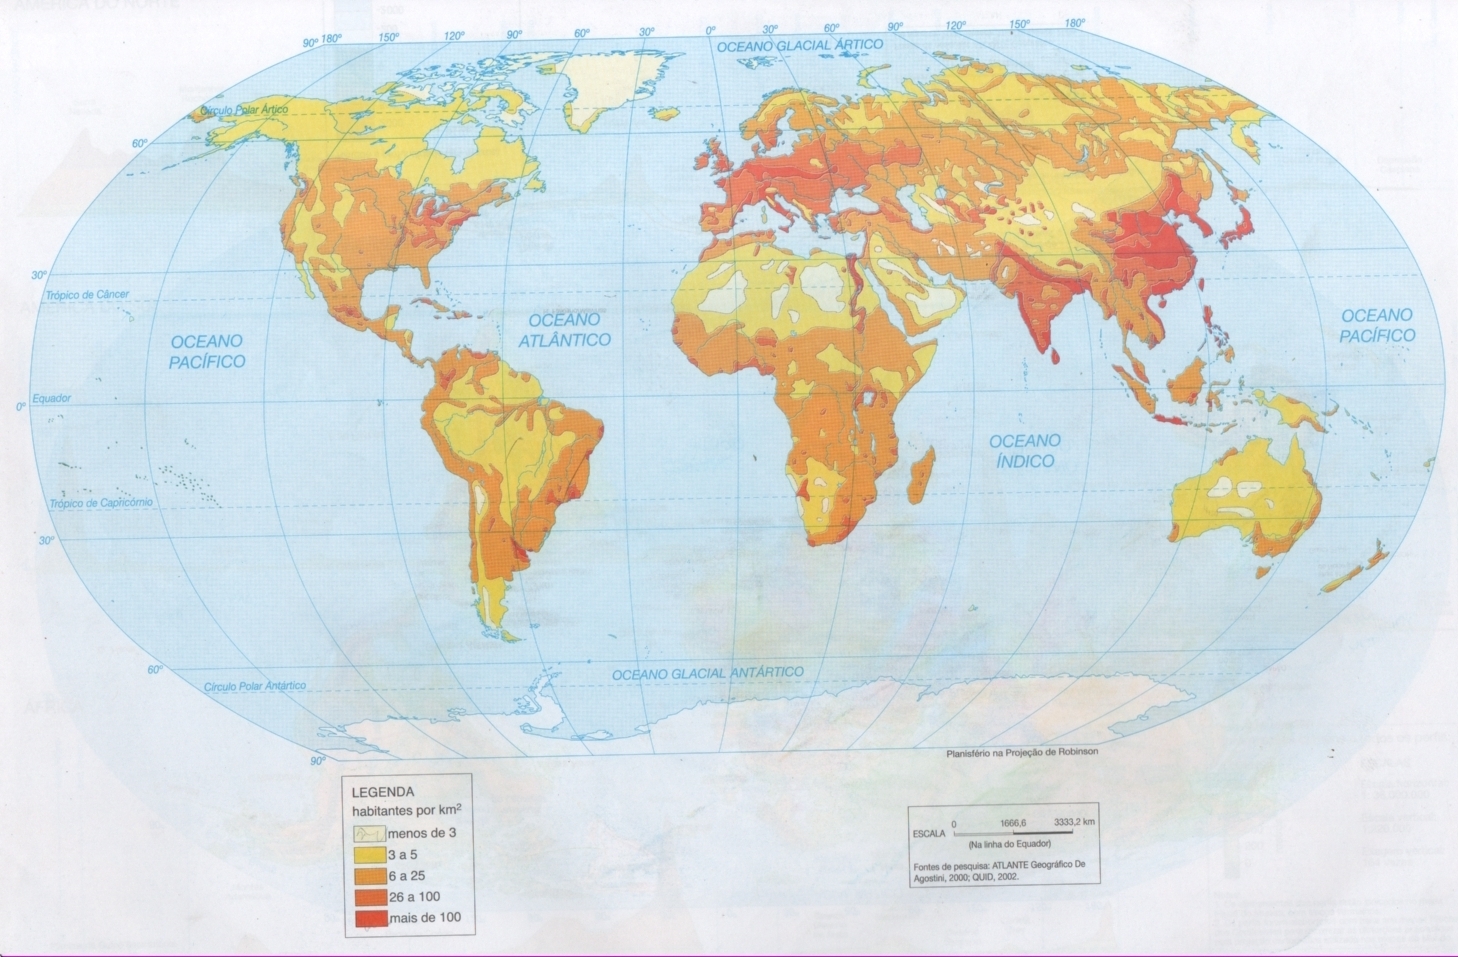 Professor Wladimir Geografia Mapas E Dados De Popula O Do Mundo